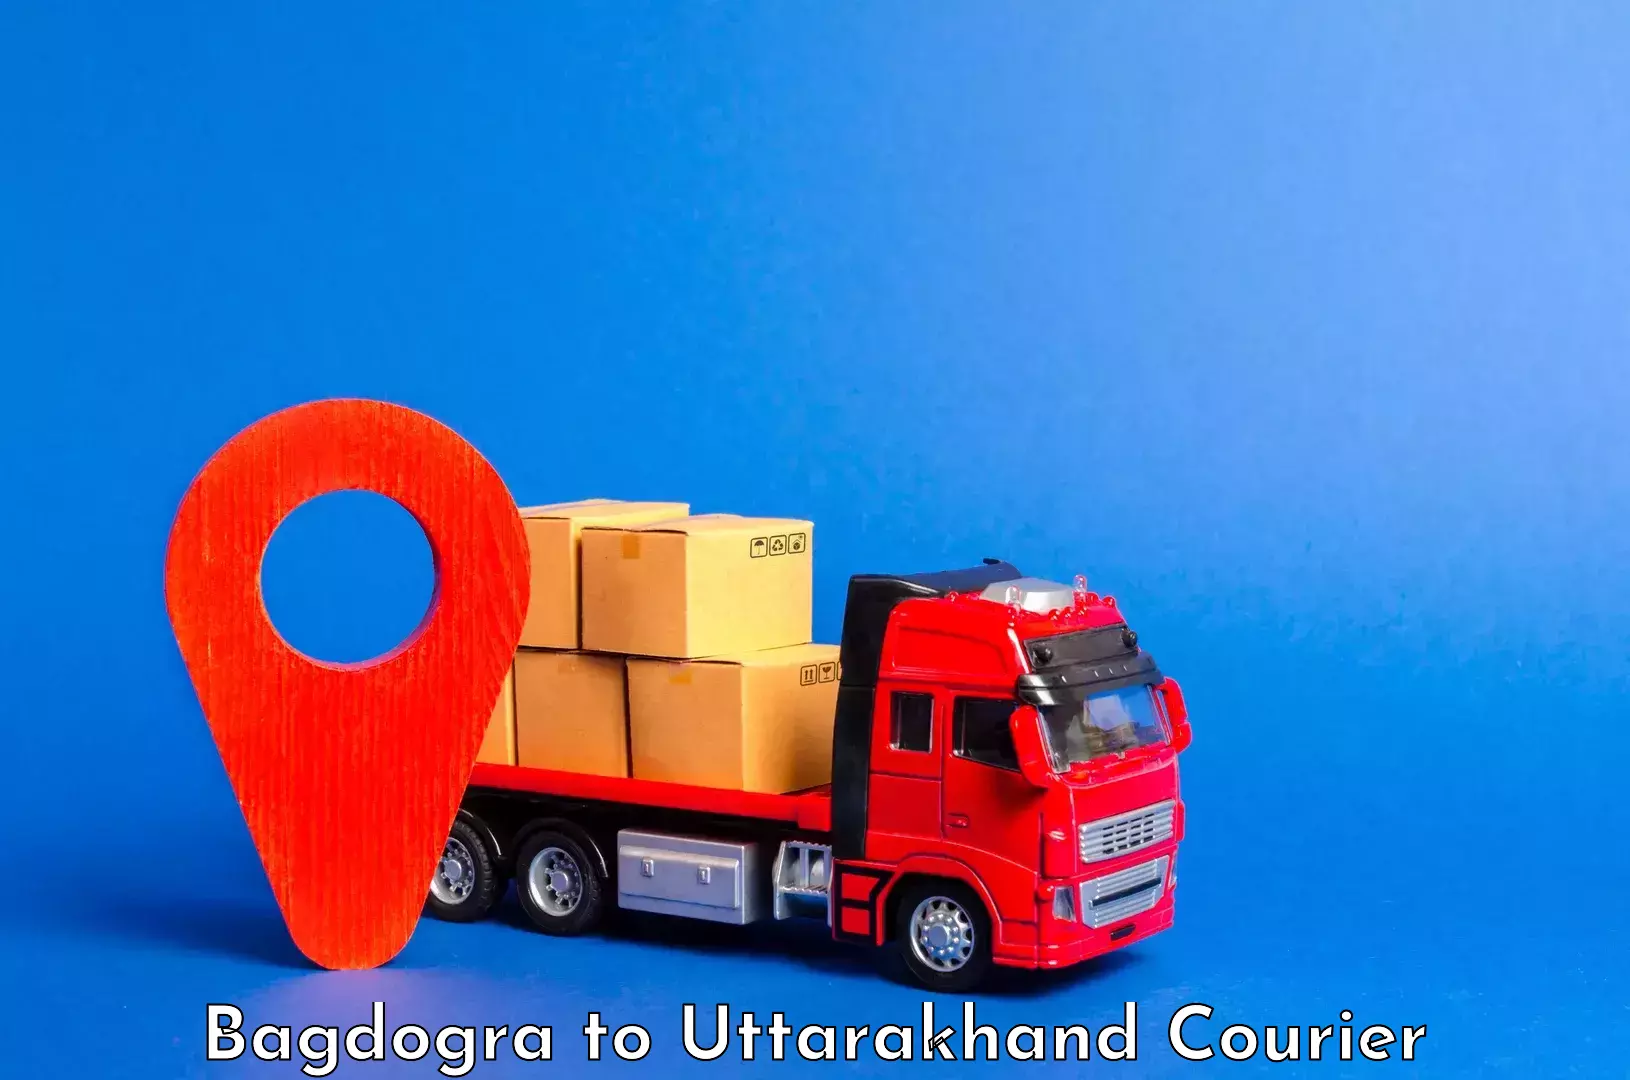 Luggage delivery system Bagdogra to Kotdwara